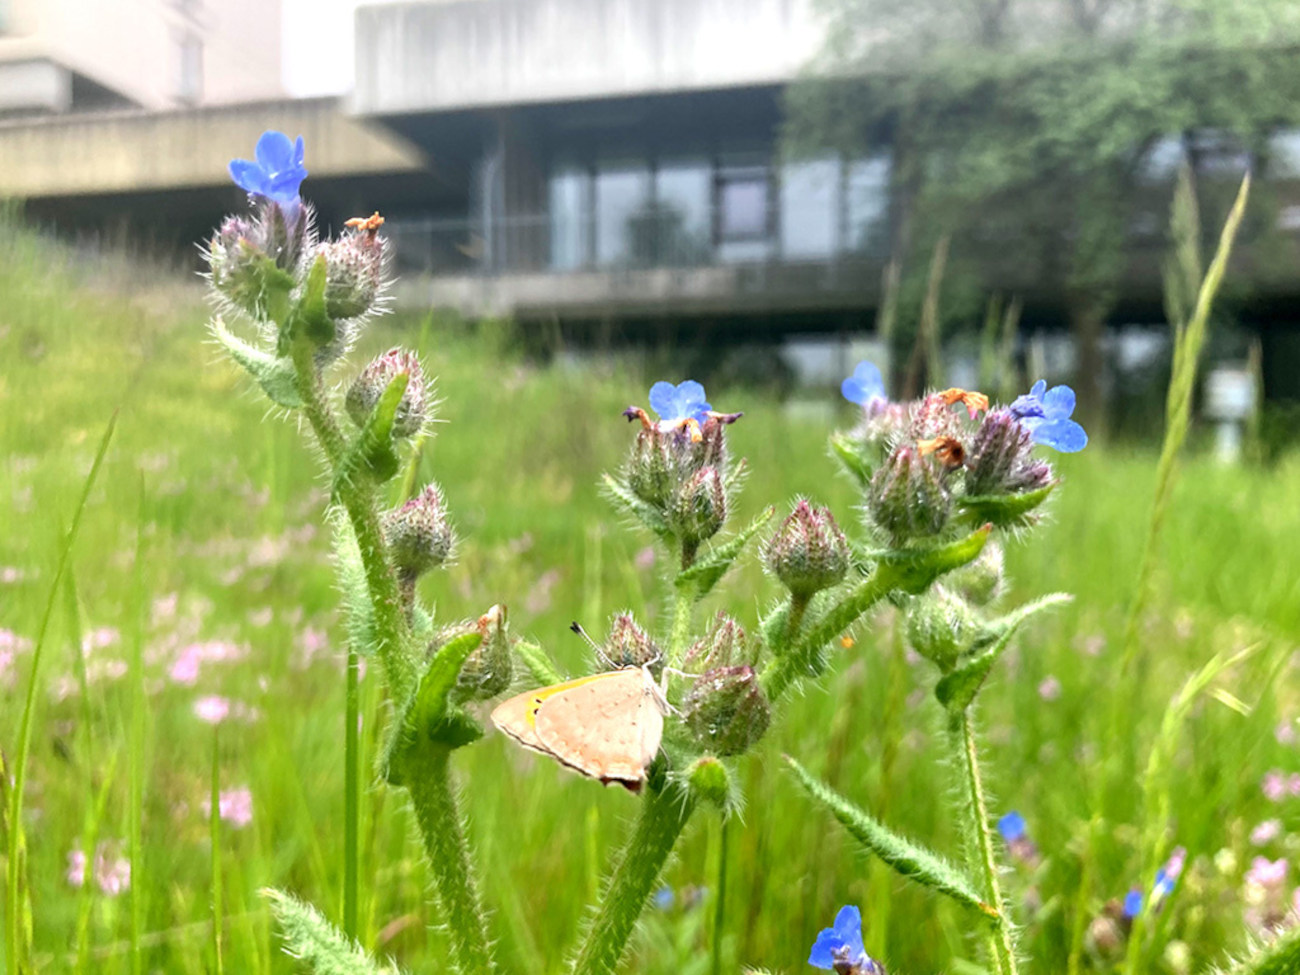 Ein kleiner gelber Schmetterling sitzt auf einer Blume mit kleinen blauen Blüten. Im Hintergrund sieht man die ungemähte Wiese vor einem Gebäude der Universität.